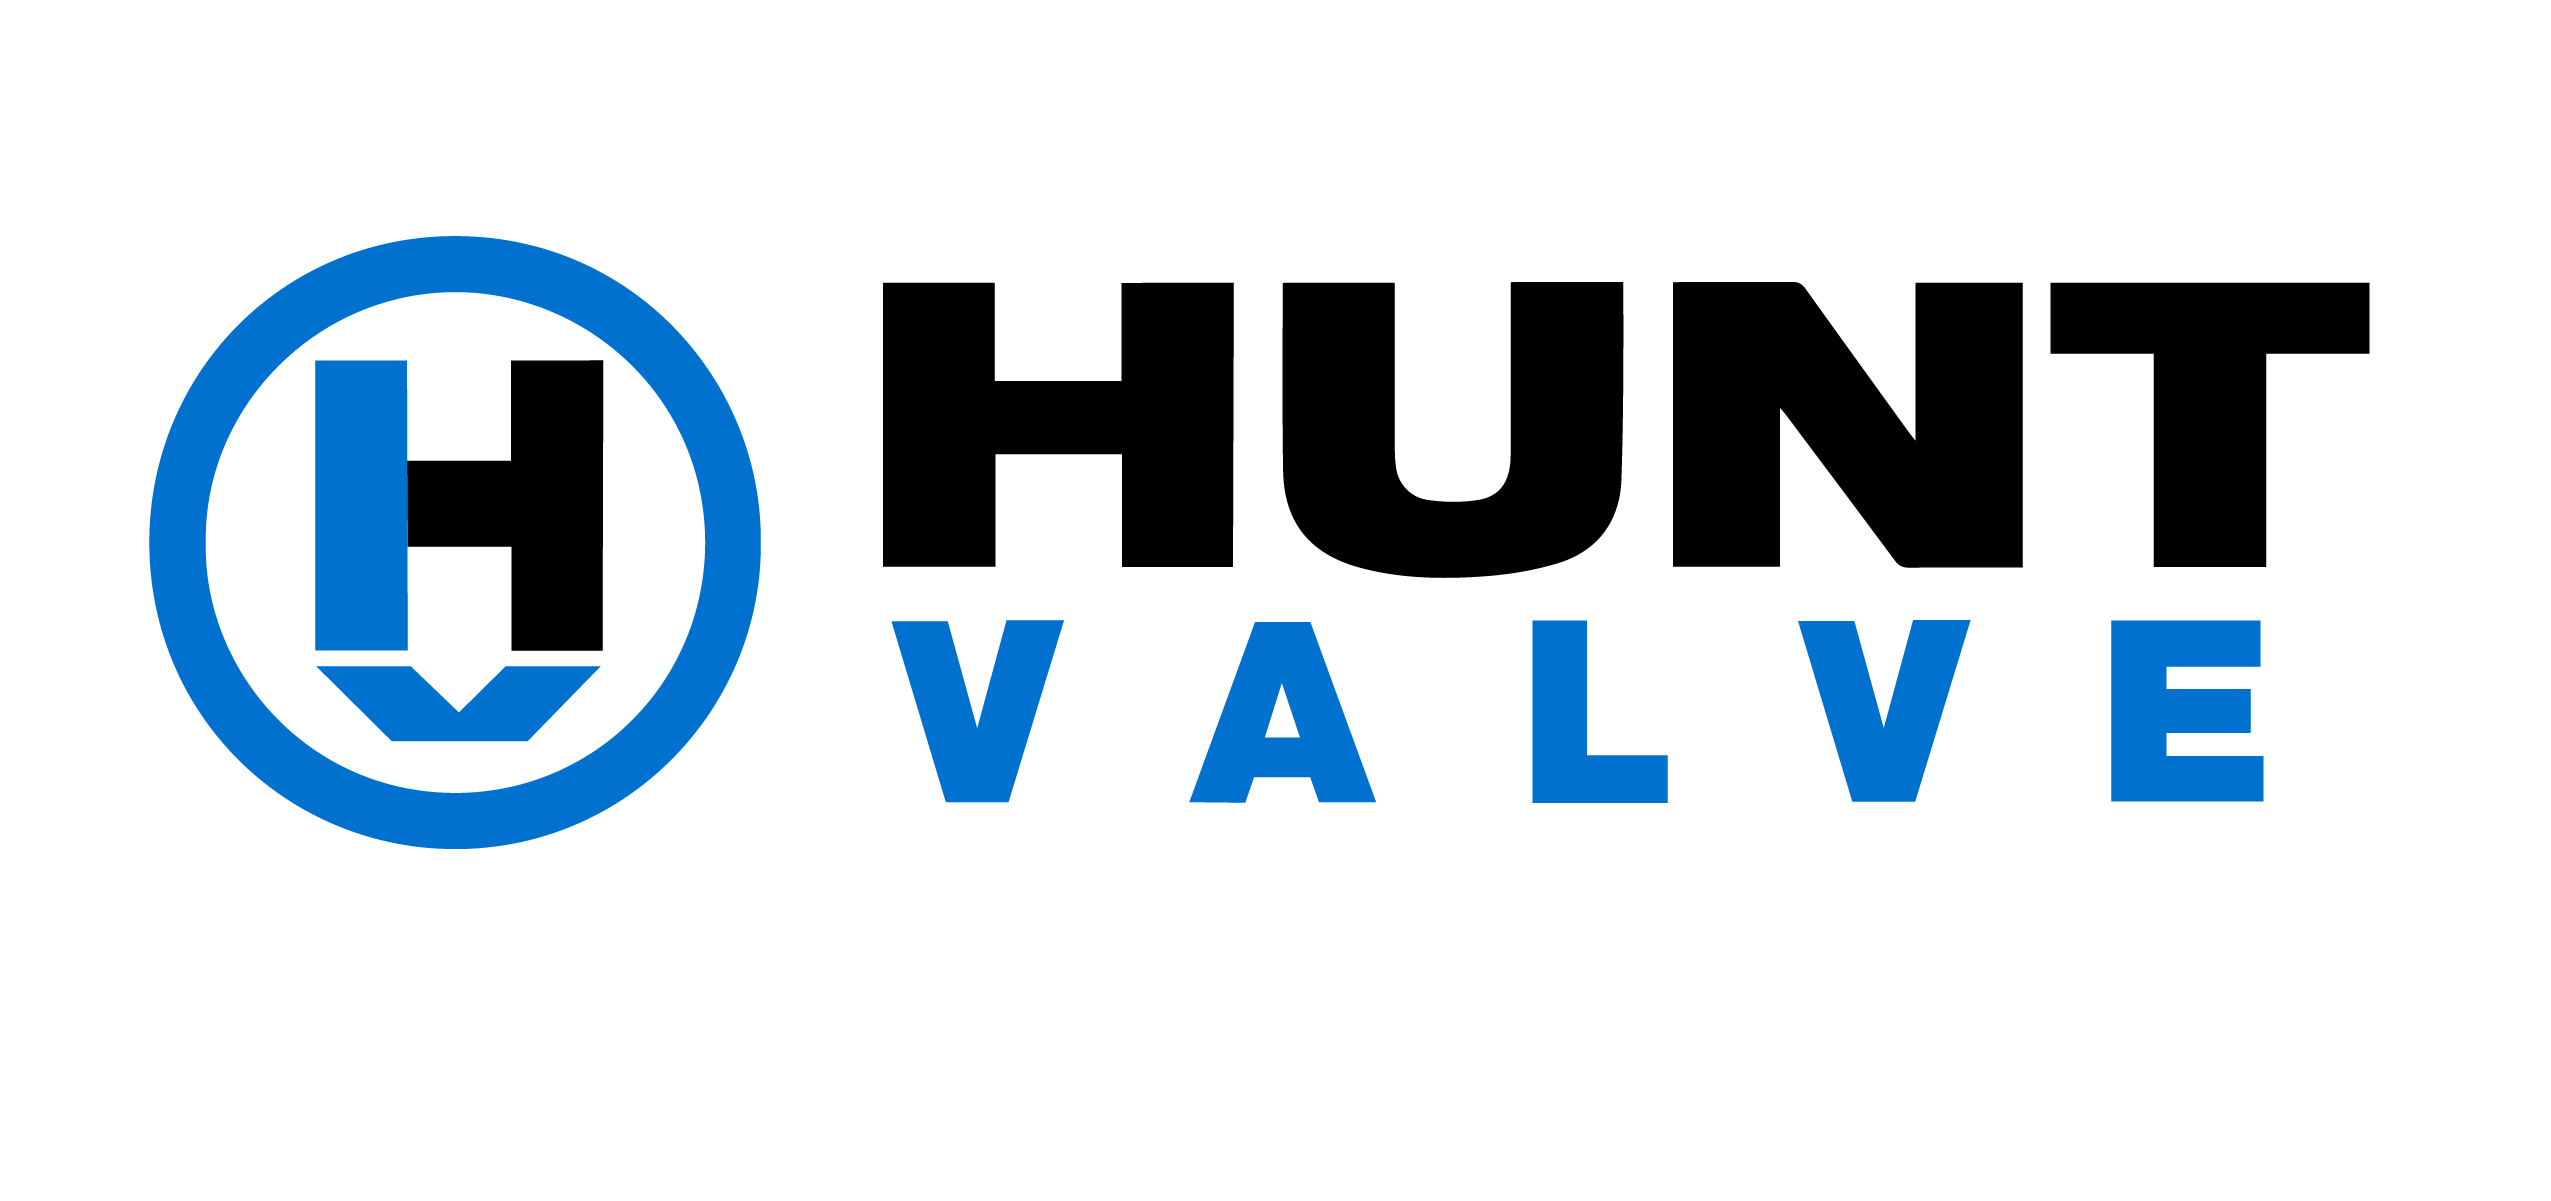 hunt-valve-logo-final